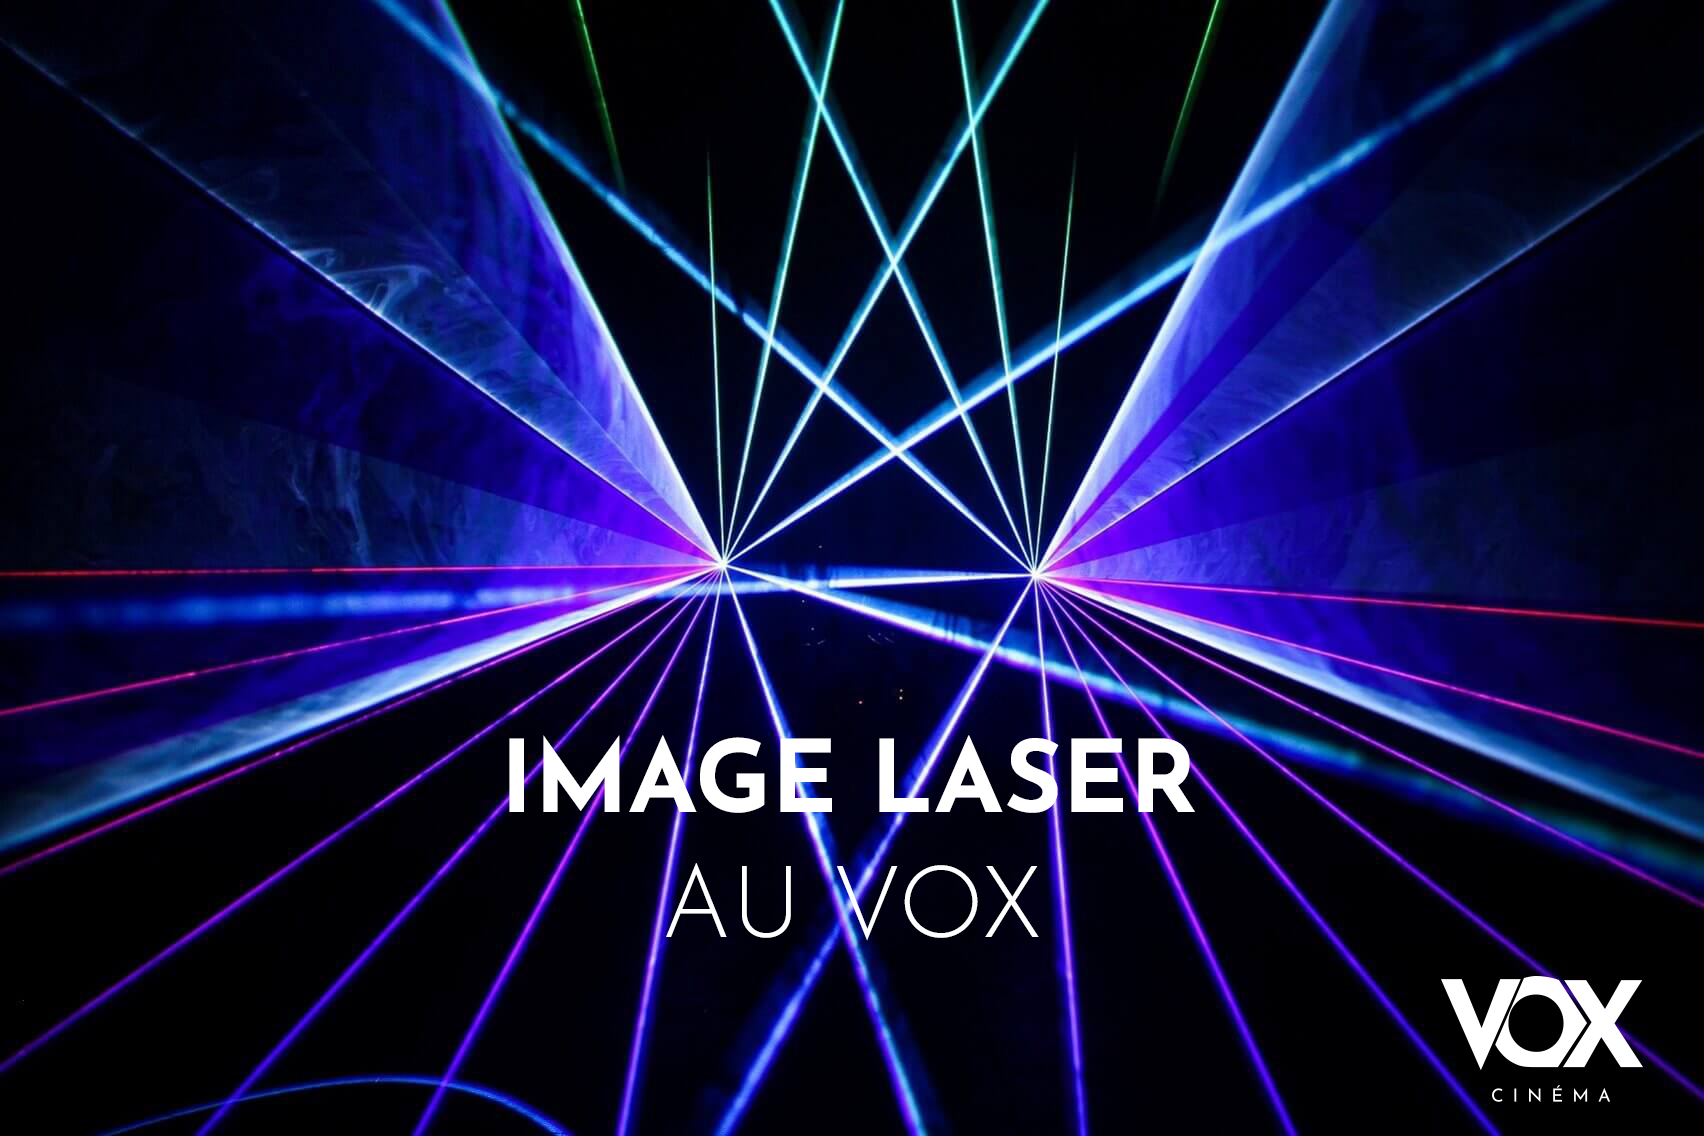 Image Laser